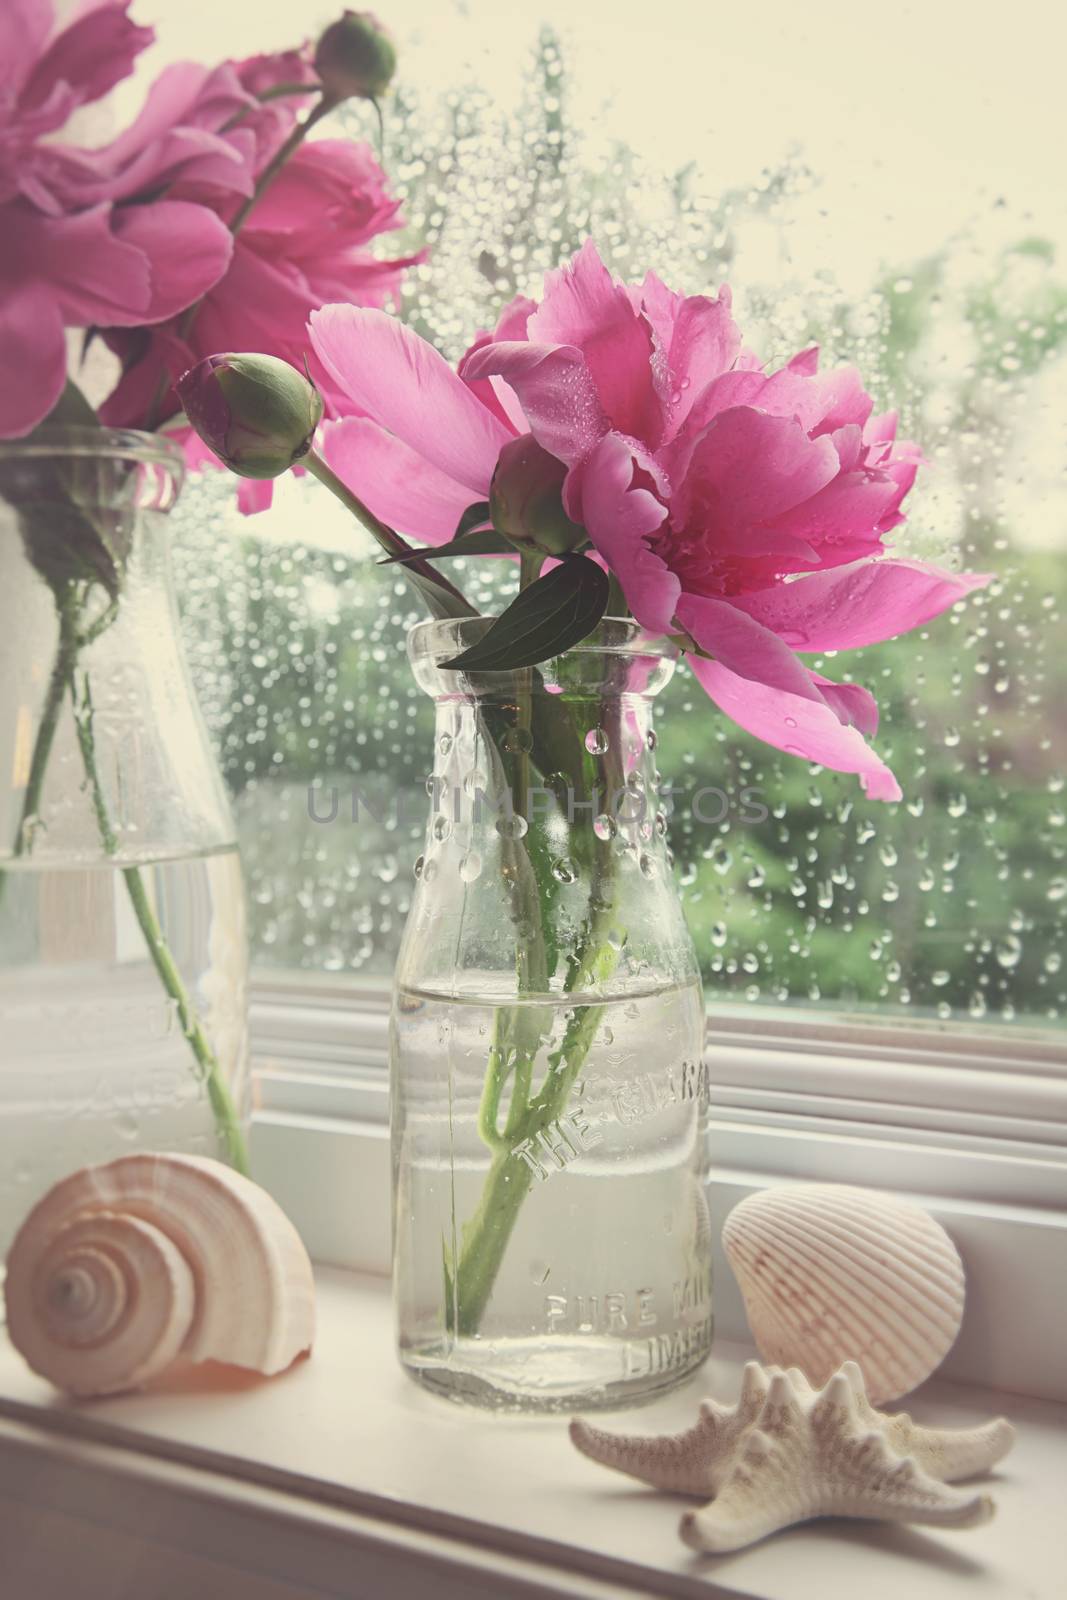 Peony flowers in milk bottles in the window  by Sandralise